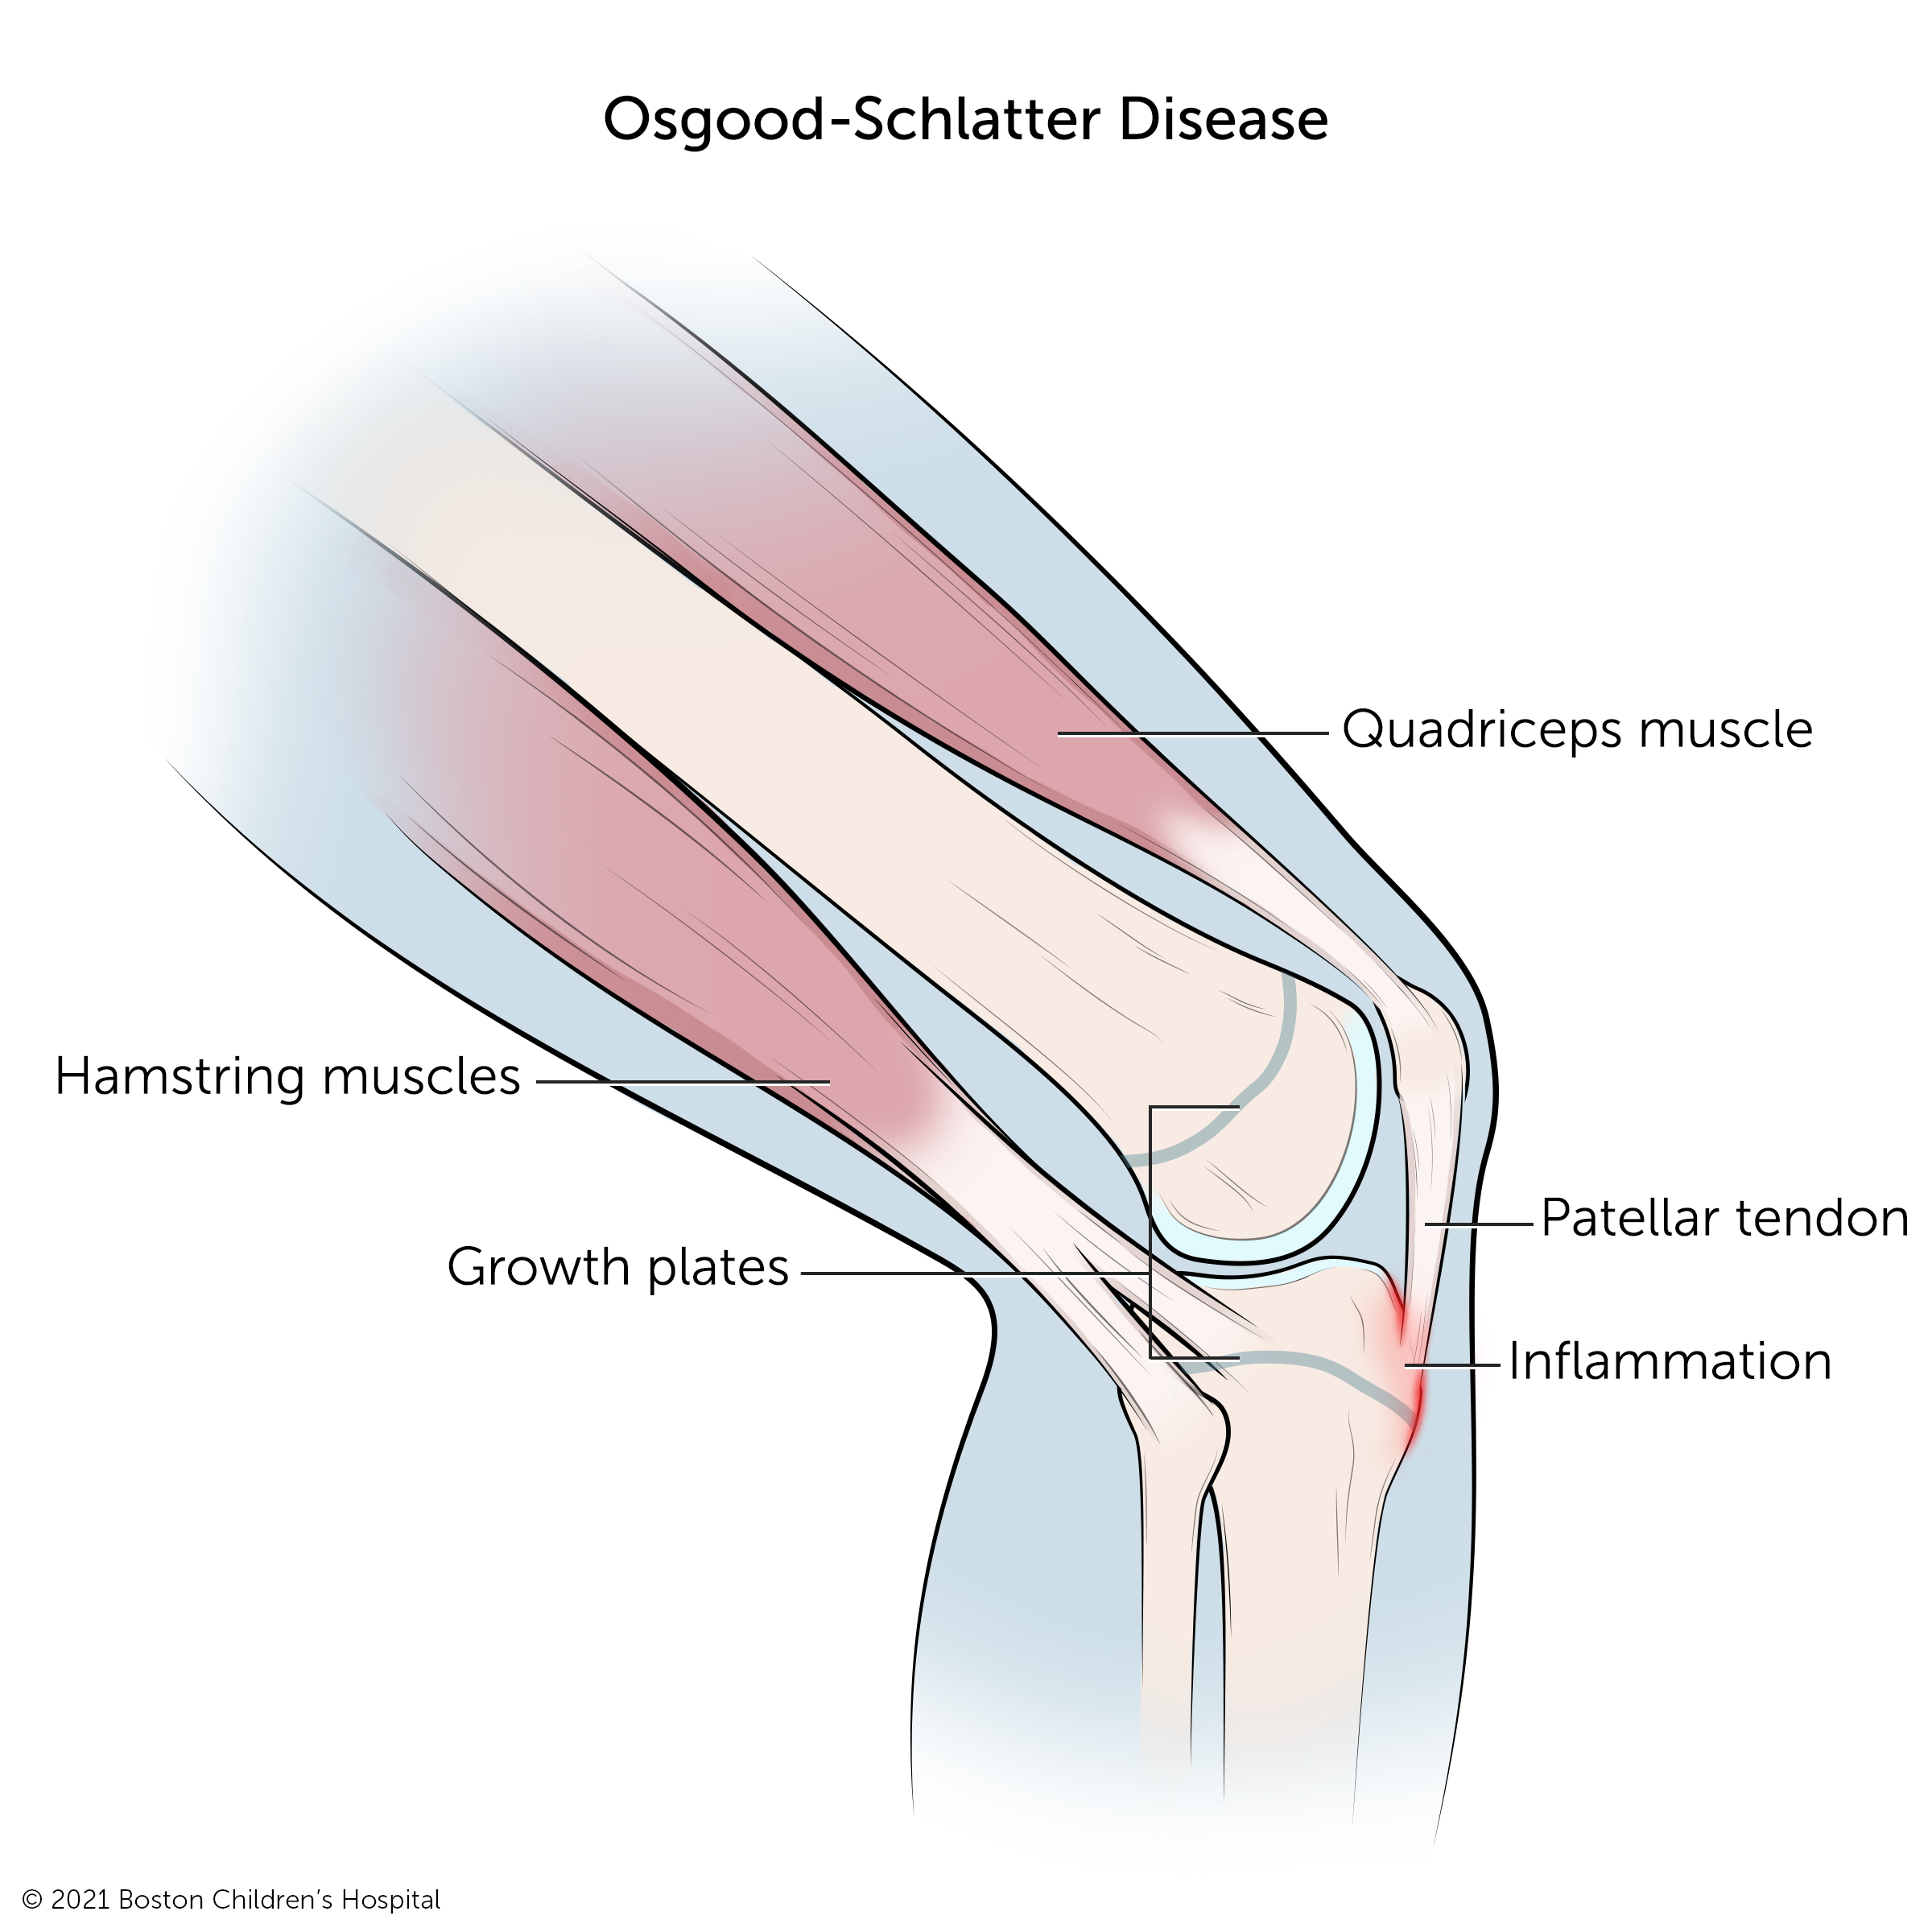 Illustration: Osgood-Schlatter disease